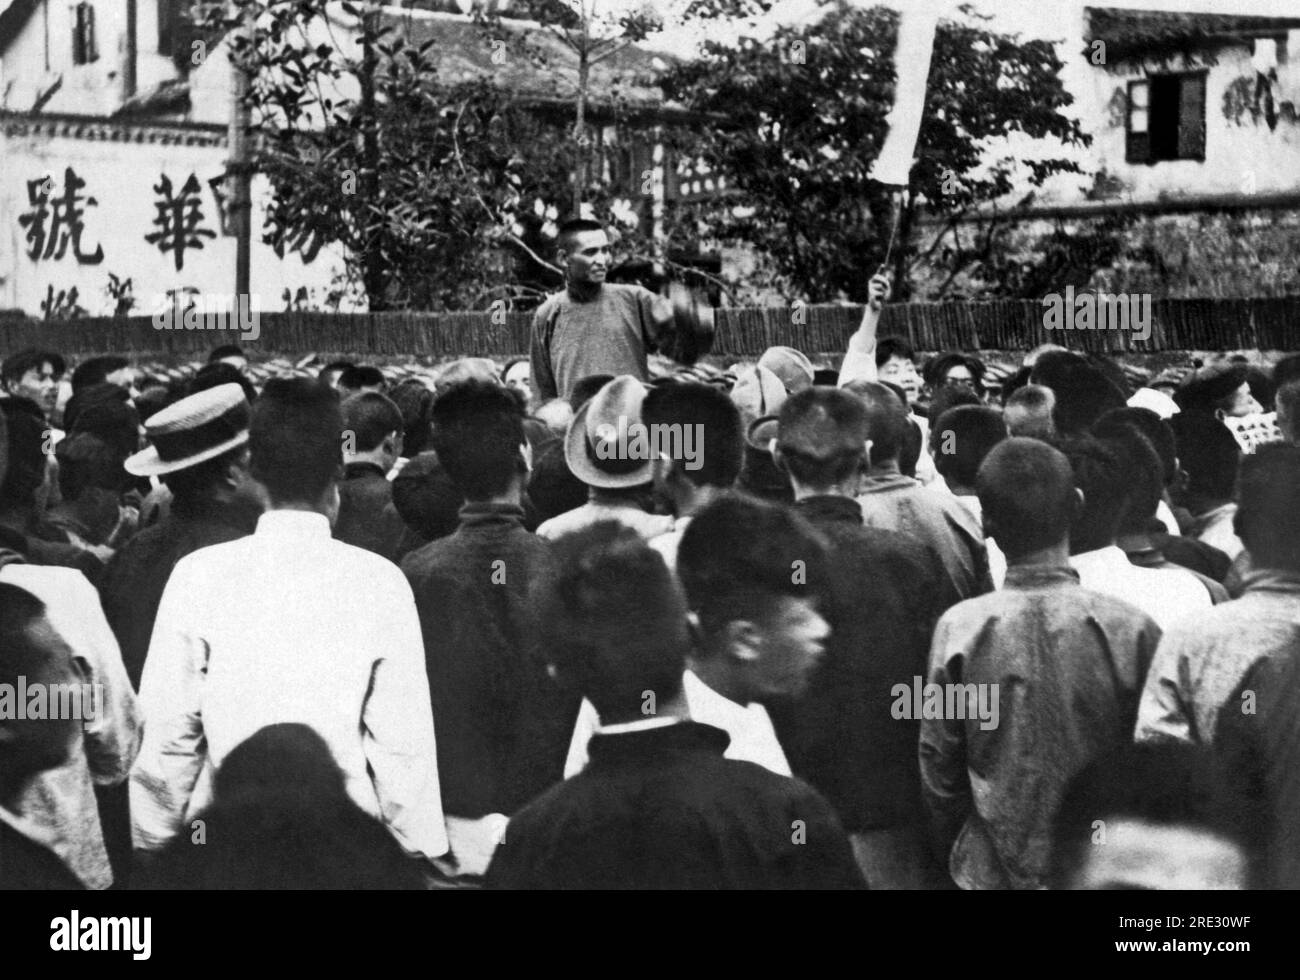 Shanghai, China: Am 16. Februar 1927 Wurde Ein Streiktreffen in Shanghai von einem nationalistischen Agitator angeregt. Die Krise hier wird immer akuter, da Streiks und ungeordnete Oubreaks immer häufiger auftreten und das Leben von Ausländern in der Siedlung in Shanghai gefährdet wird. Stockfoto